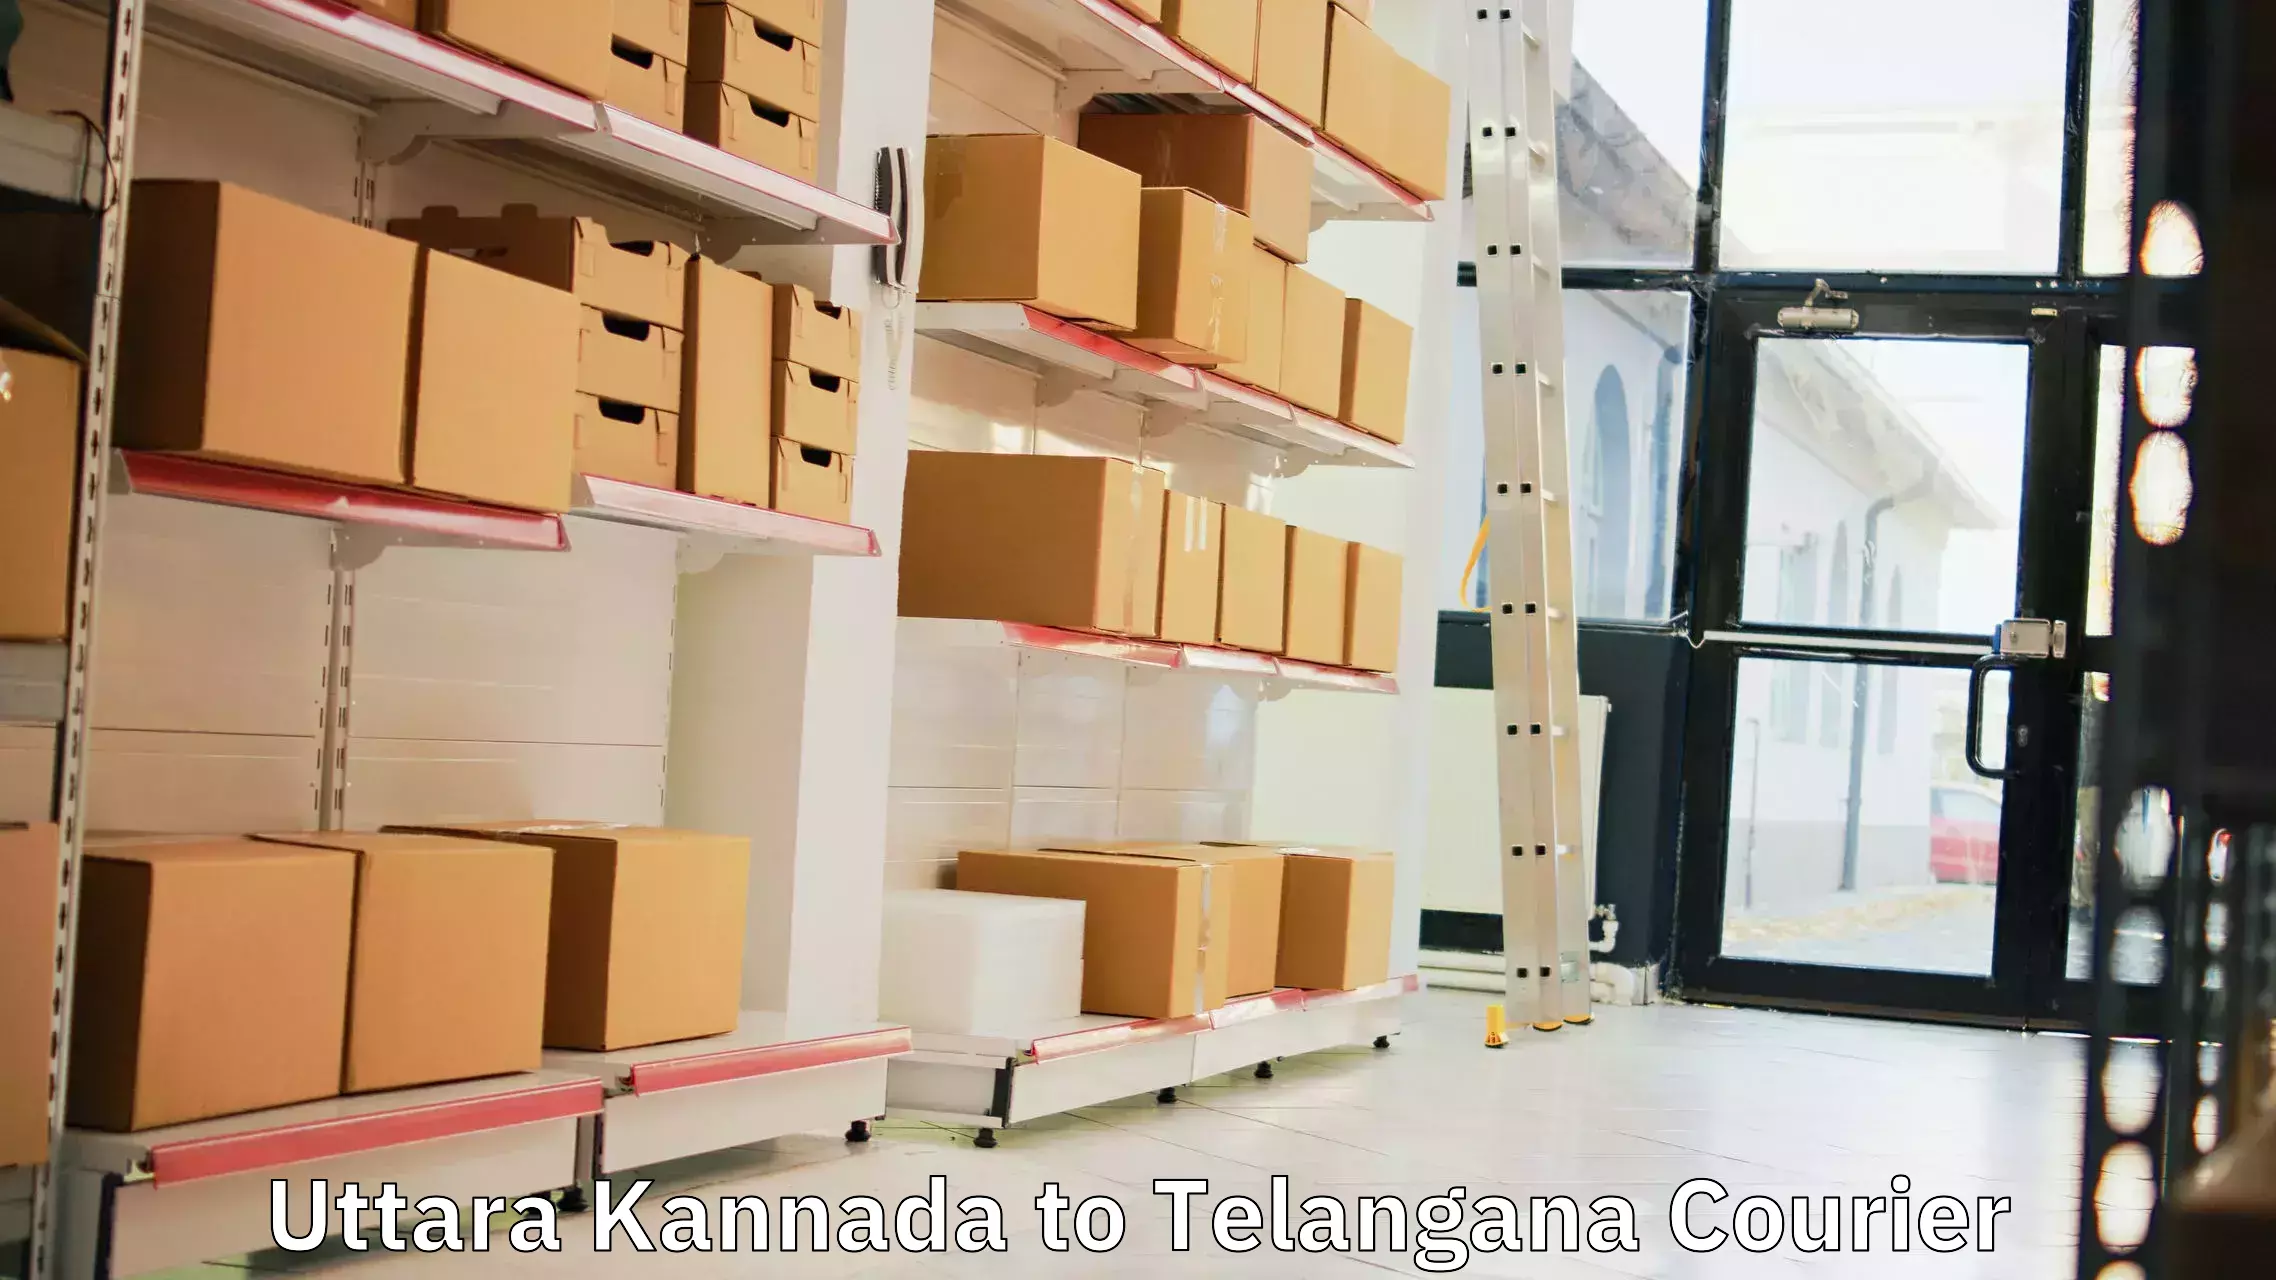 Logistics service provider Uttara Kannada to Chintoor